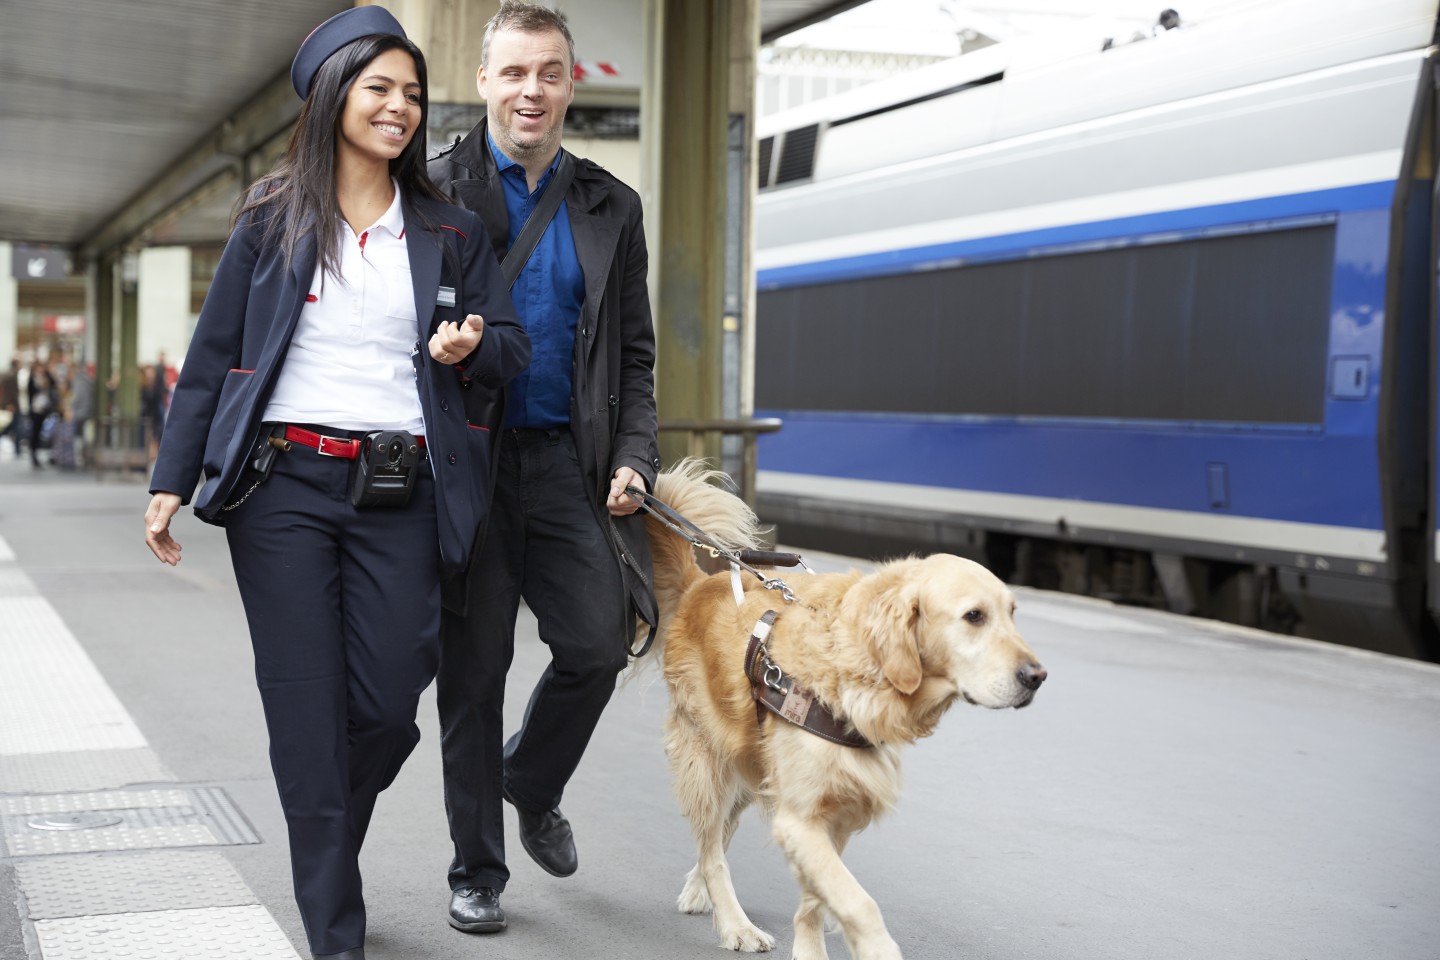 Un membre du personnel SNCF accompagne une personne aveugle à son train